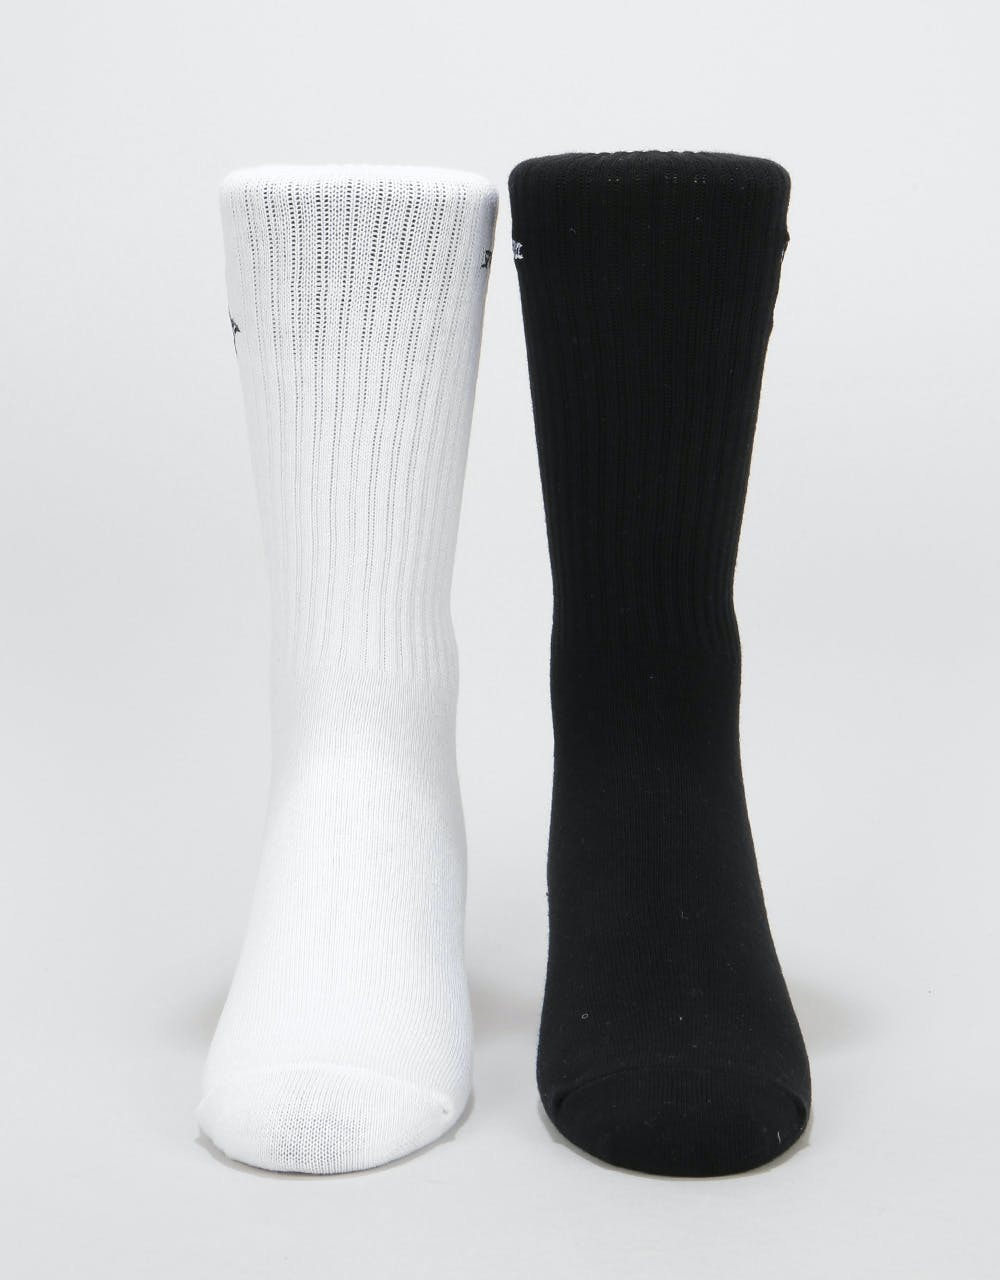 Santa Cruz Pray Socks 2 Pack - Black/White